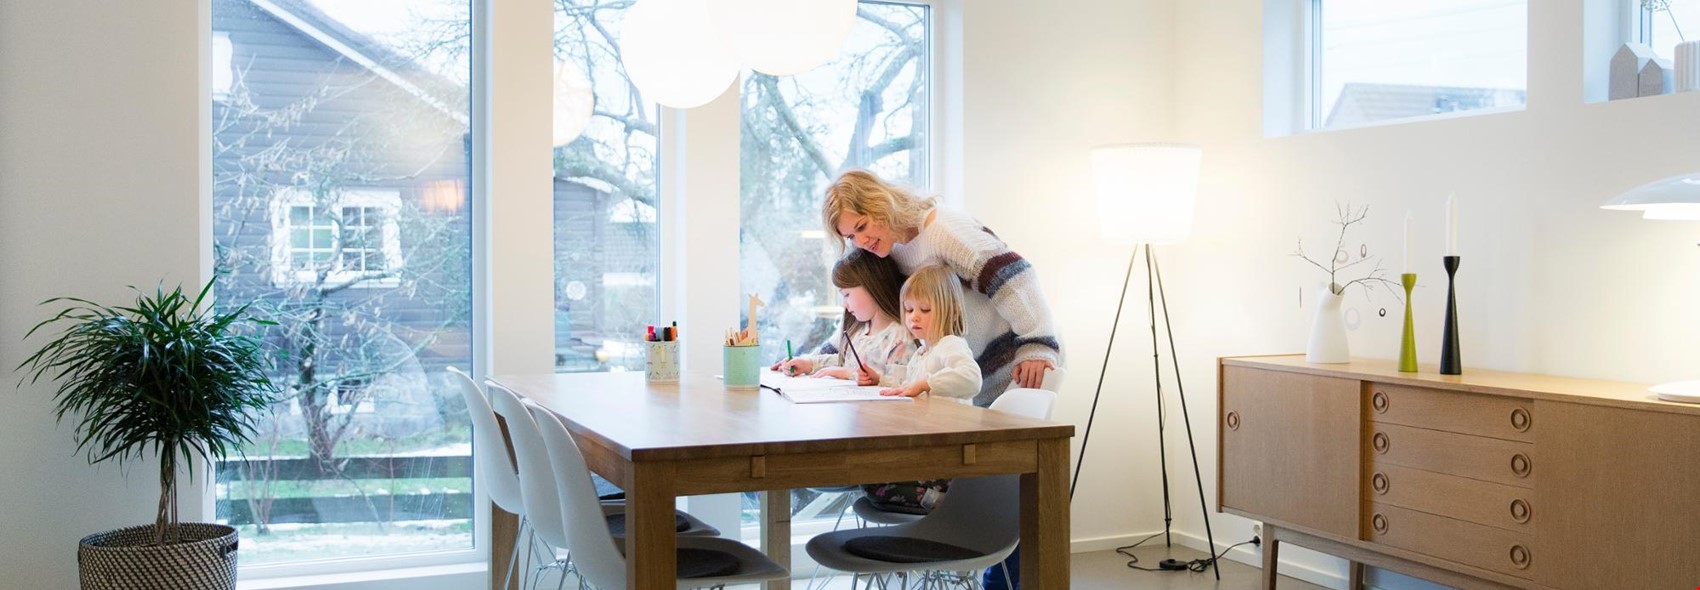 Kvinne som hjelper 2 barn med lekser på kjøkkenbordet